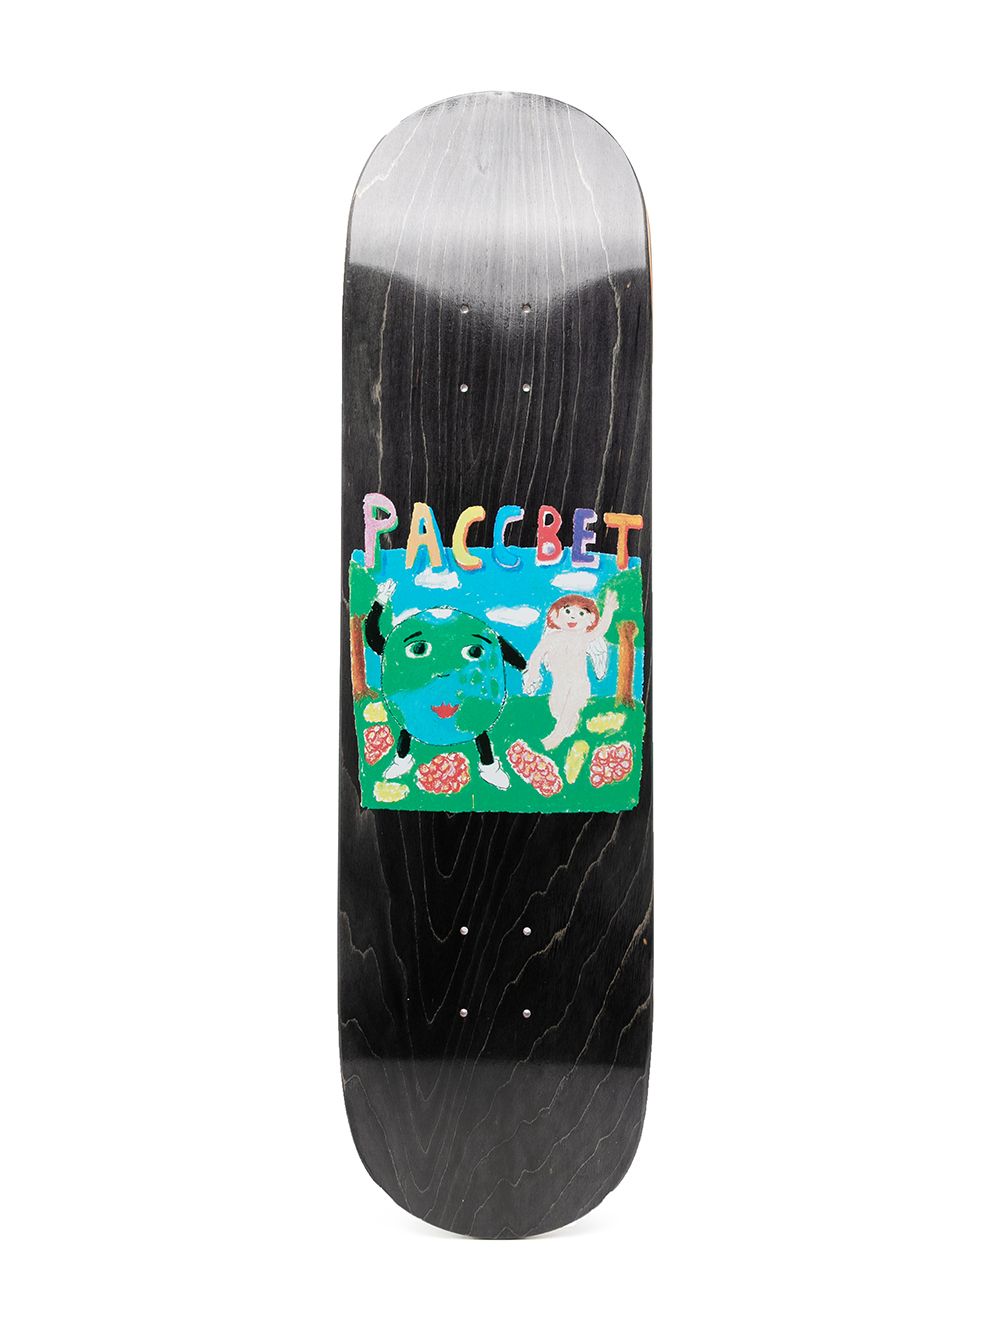 фото Paccbet деревянная дека для скейтборда с принтом